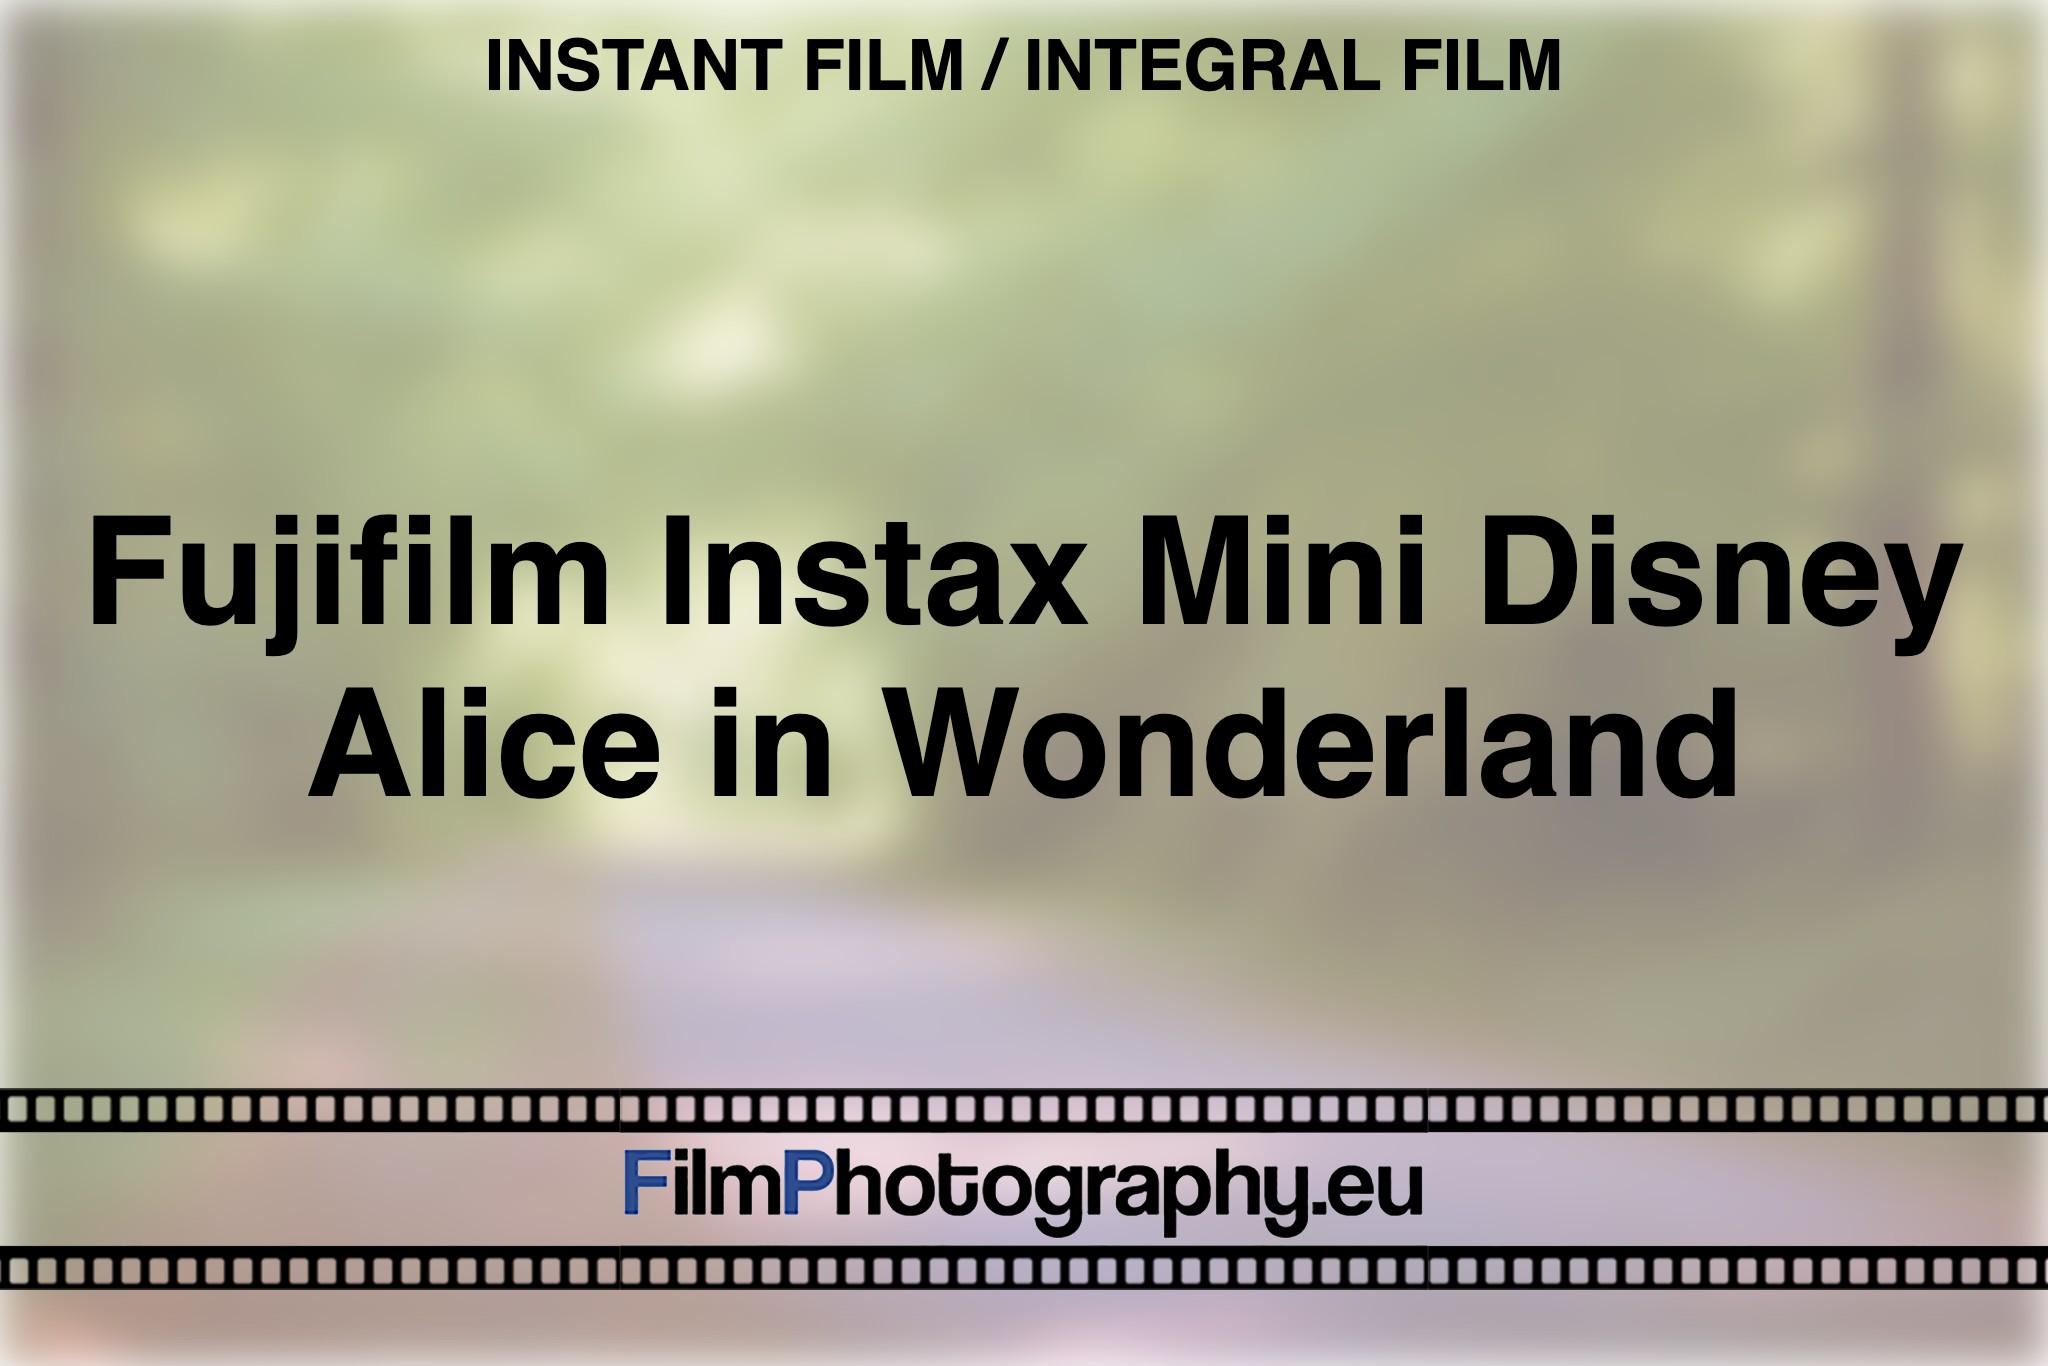 fujifilm-instax-mini-disney-alice-in-wonderland-instant-film-integral-film-bnv